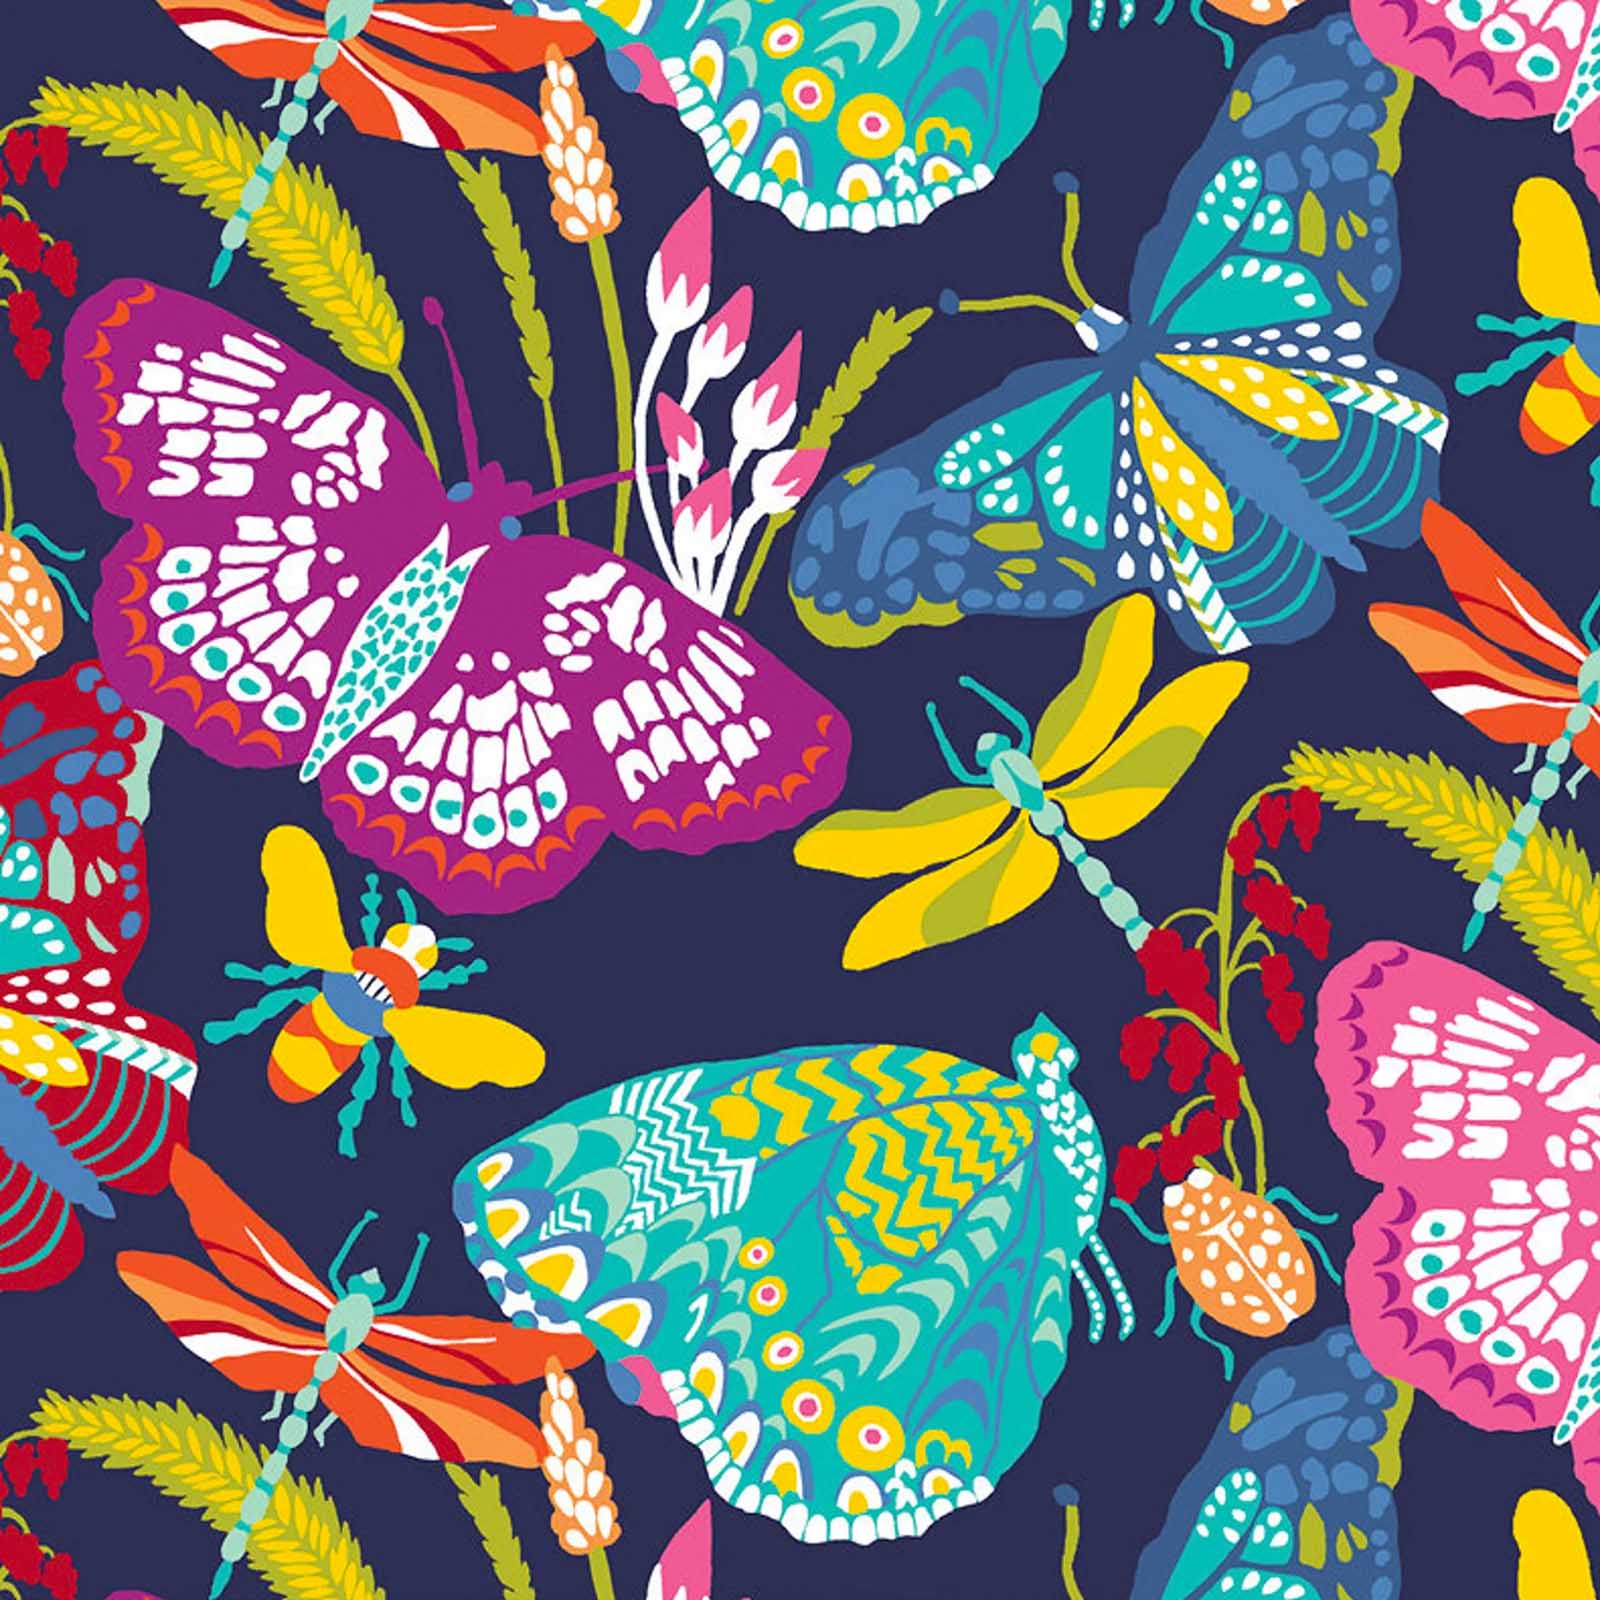 Butterflies and Dragonflies Fleece Fabric